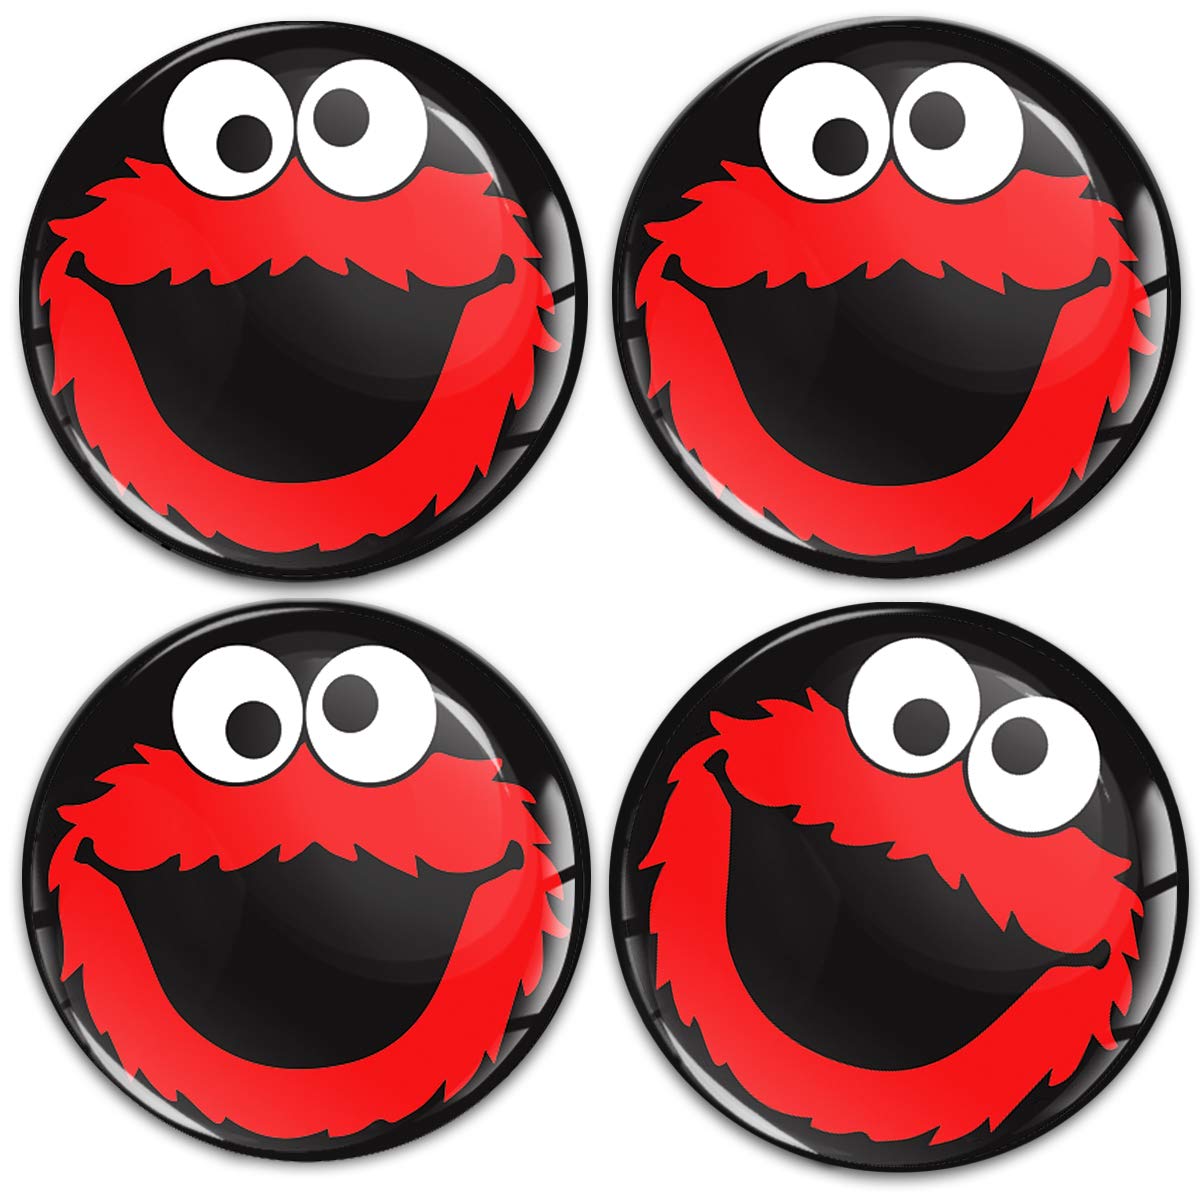 SkinoEu Aufkleber Autoaufkleber für Radkappen Nabenkappen Nabendeckel Radnabendeckel Rad-Aufkleber 70mm Schwarz Rot Elmo Cookie Monster A 5970 von SkinoEu